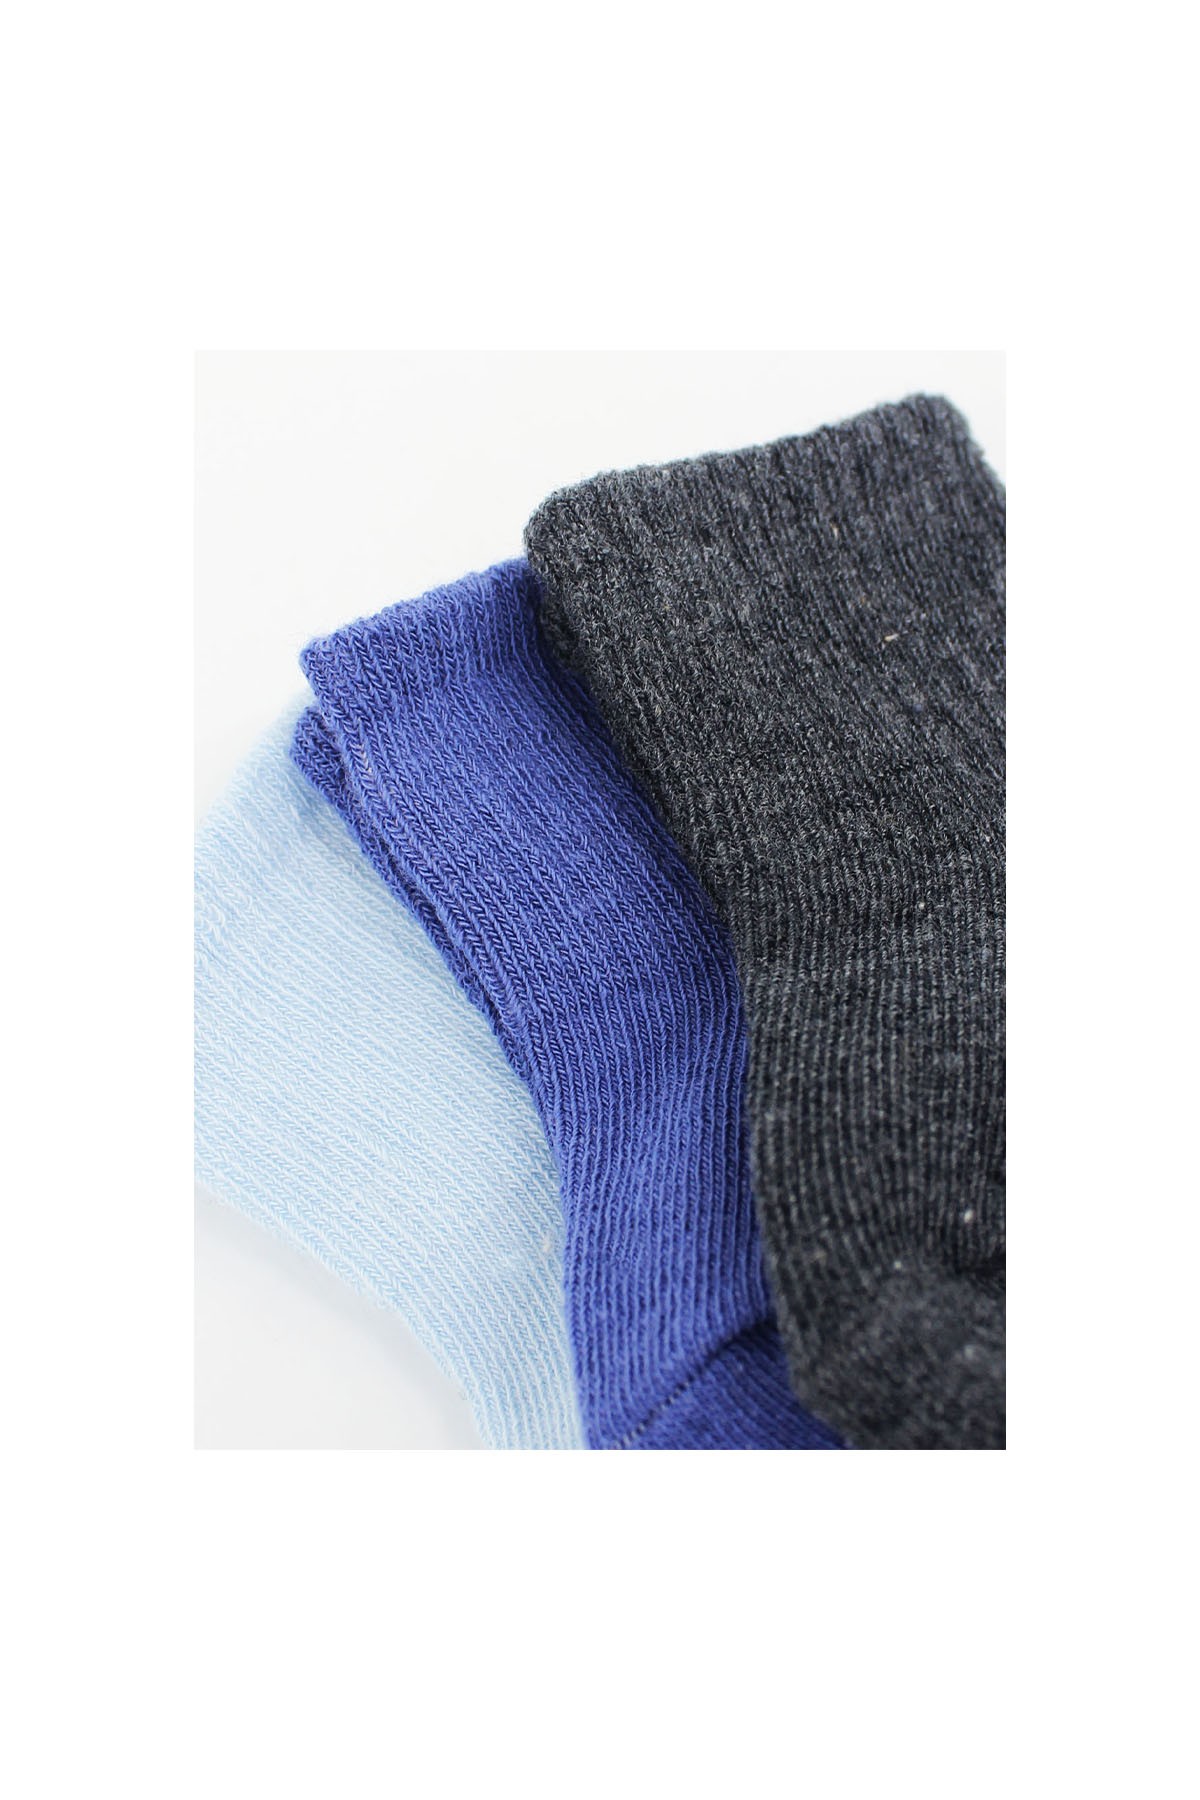 Bistyle 3'lü Penye Bebek Çorabı Lacivert Mavi Çok Renkli